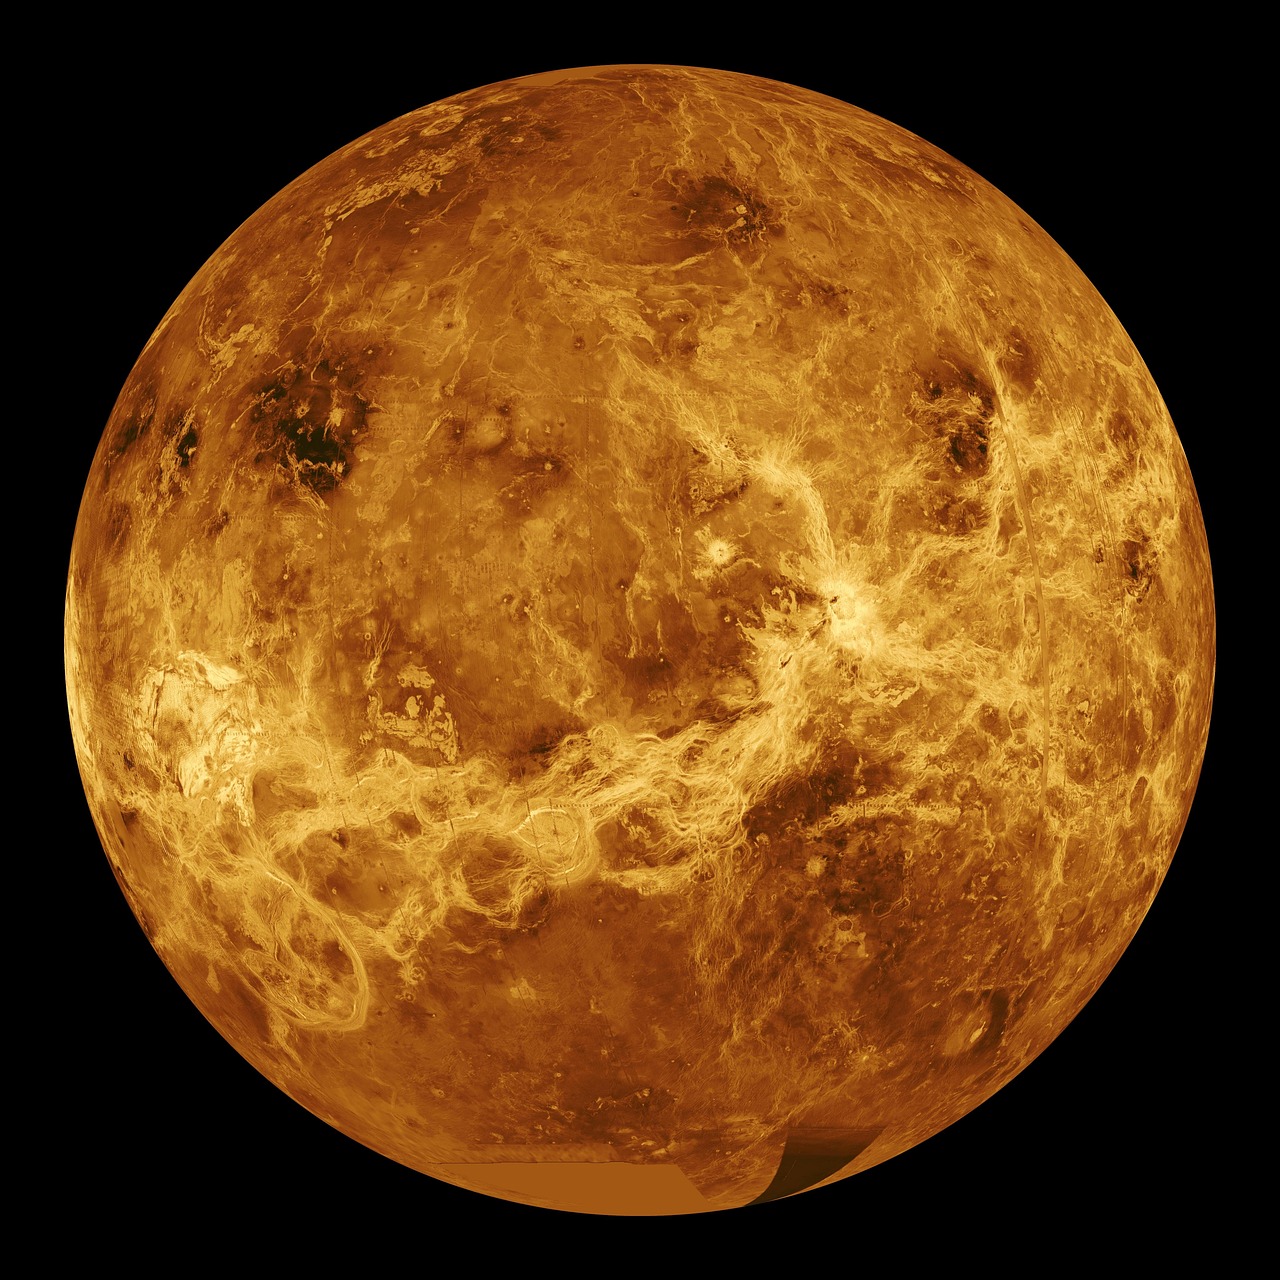 Jako druhá planeta od Slunce a nejbližší planetární soused Země byla Venuše dlouhou dobu zdrojem fascinace pro pozorovatele oblohy a astronomické nadšence. Nazývaná "Večerní hvězdou" nebo "Ranní hvězdou" podle své pozice vzhledem k Slunci, Venuše nabízí poutavou podívanou, když ozáří noční oblohu. V tomto článku prozkoumáme okamžiky, kdy se Venuše stává viditelnou, vytvářející nebeský tanec, který okouzluje pozorovatele po celém světě.